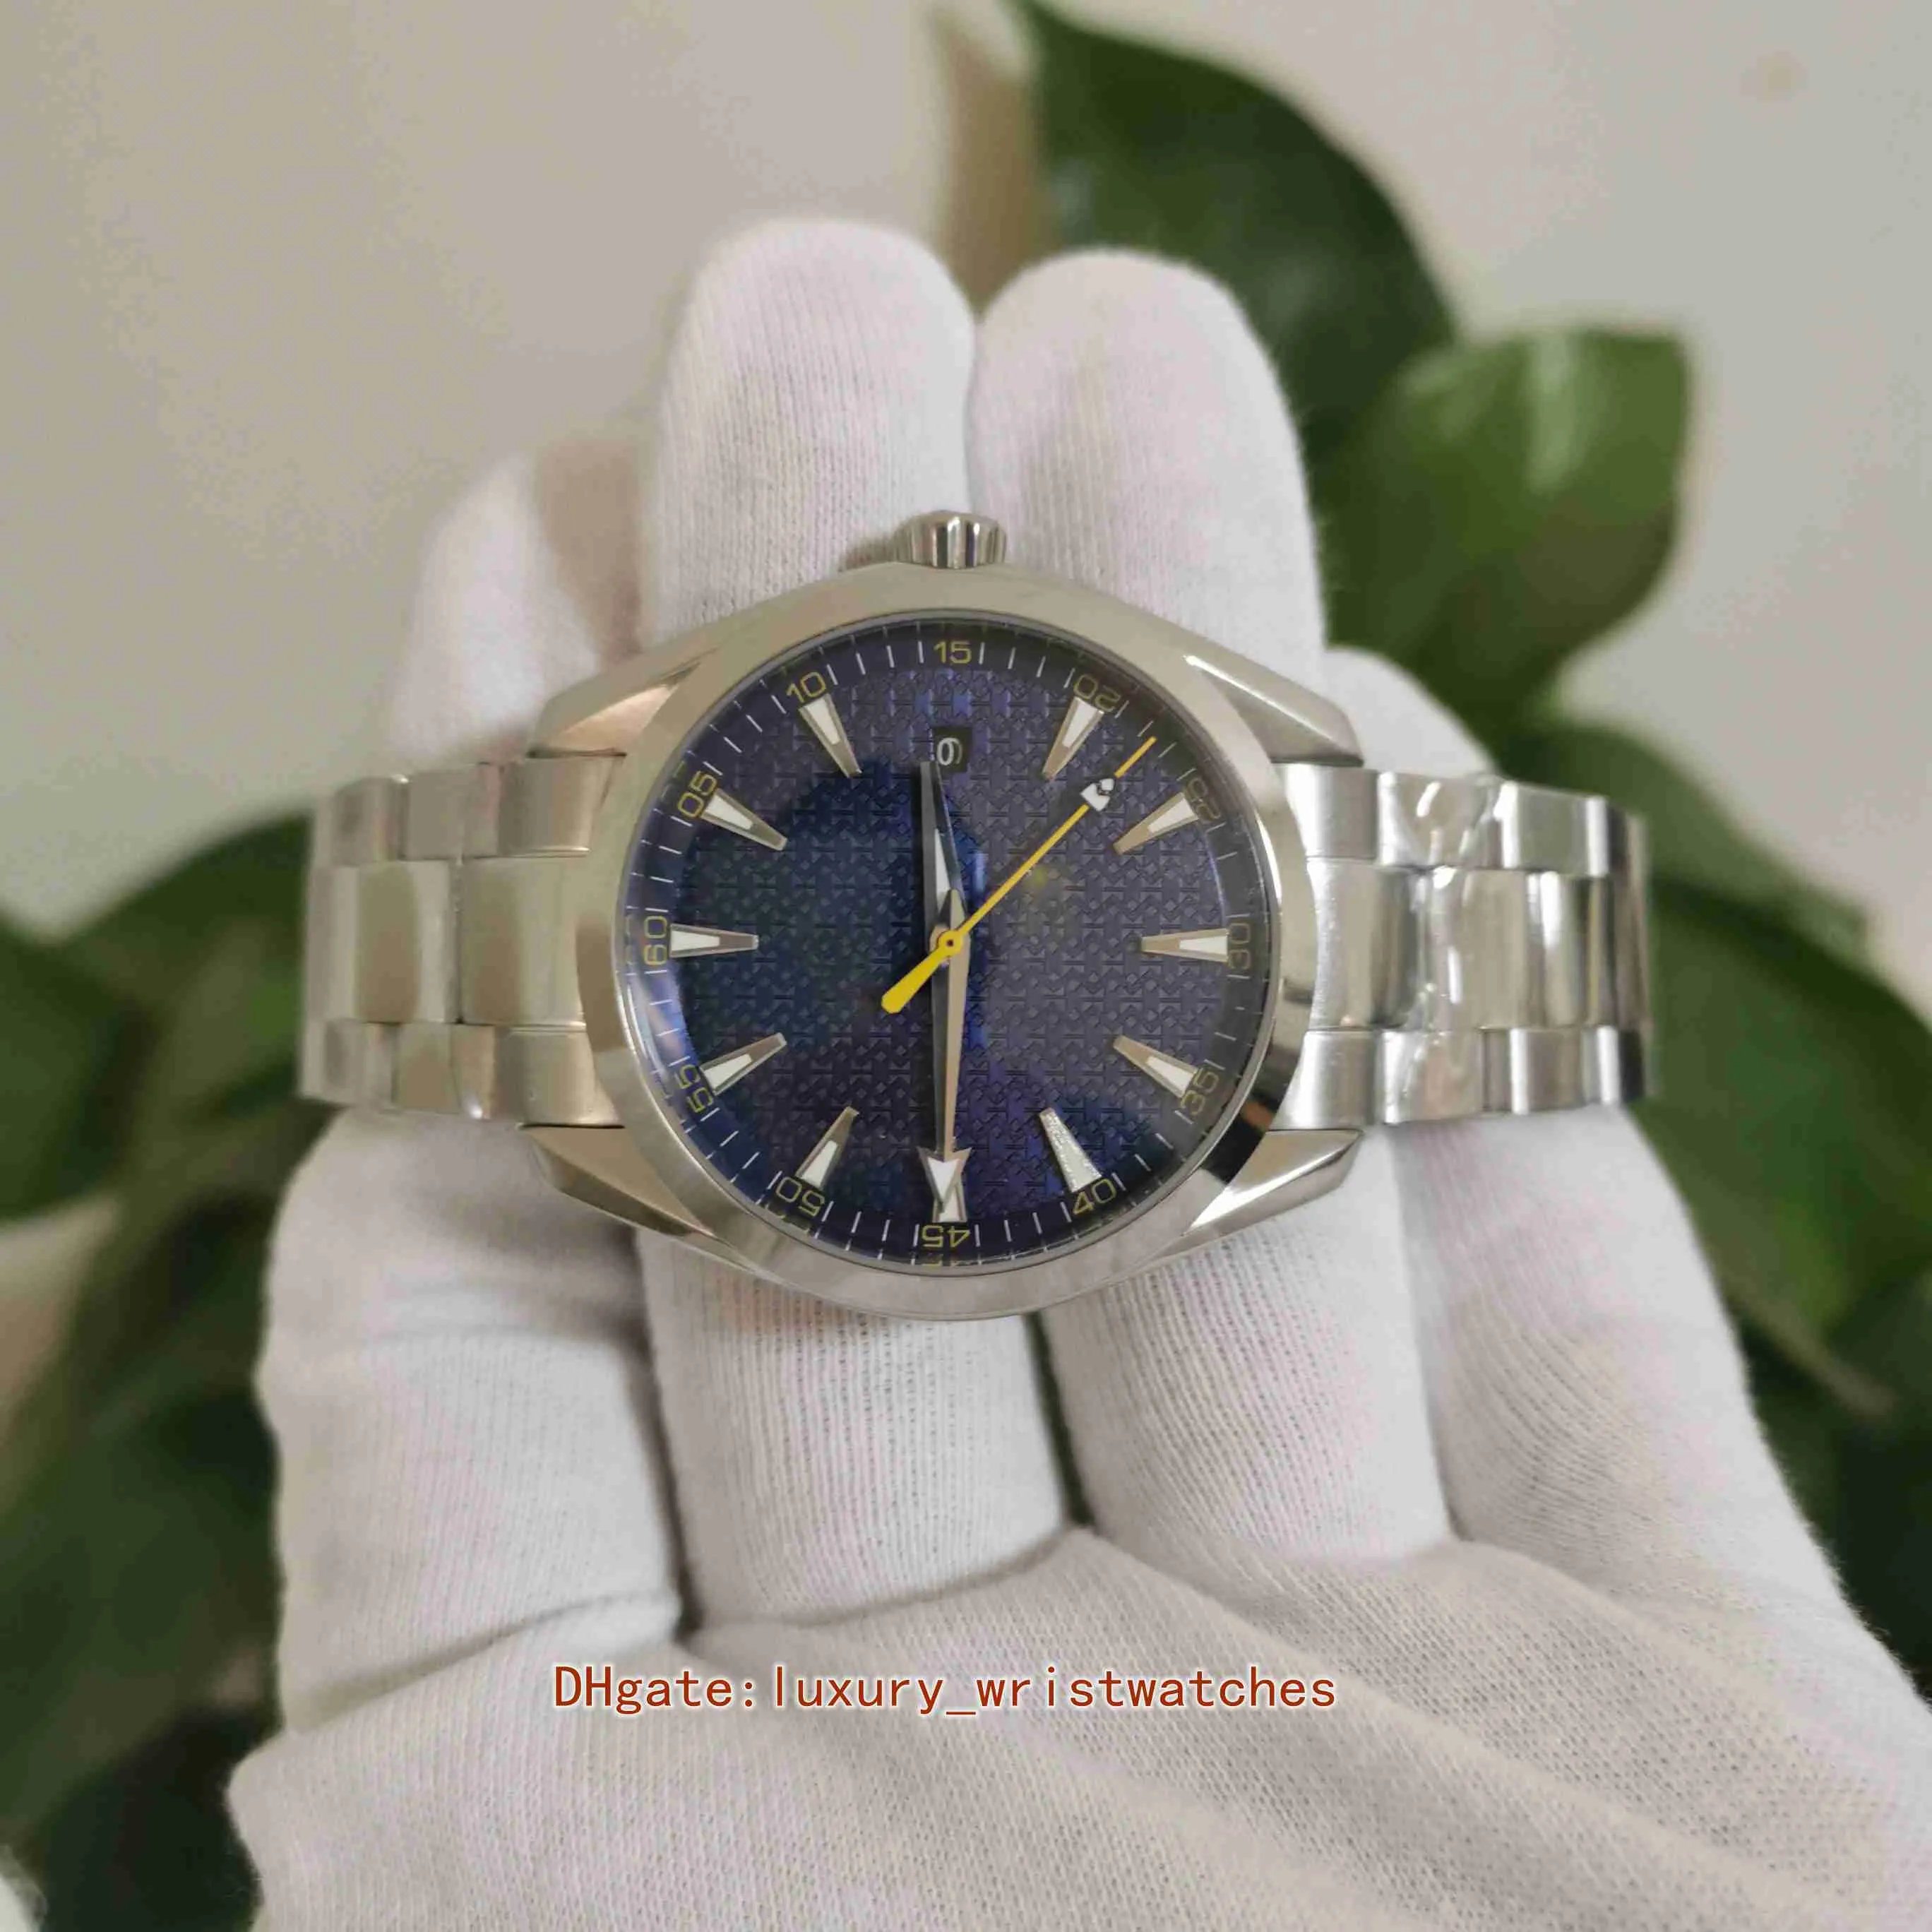 Perfecte hoge kwaliteit horloges 41,5 mm Aqua Terra 150M 220 10 41 21 03 004 roestvrij staal transparant mechanisch automatisch herenhorloge Watc252t